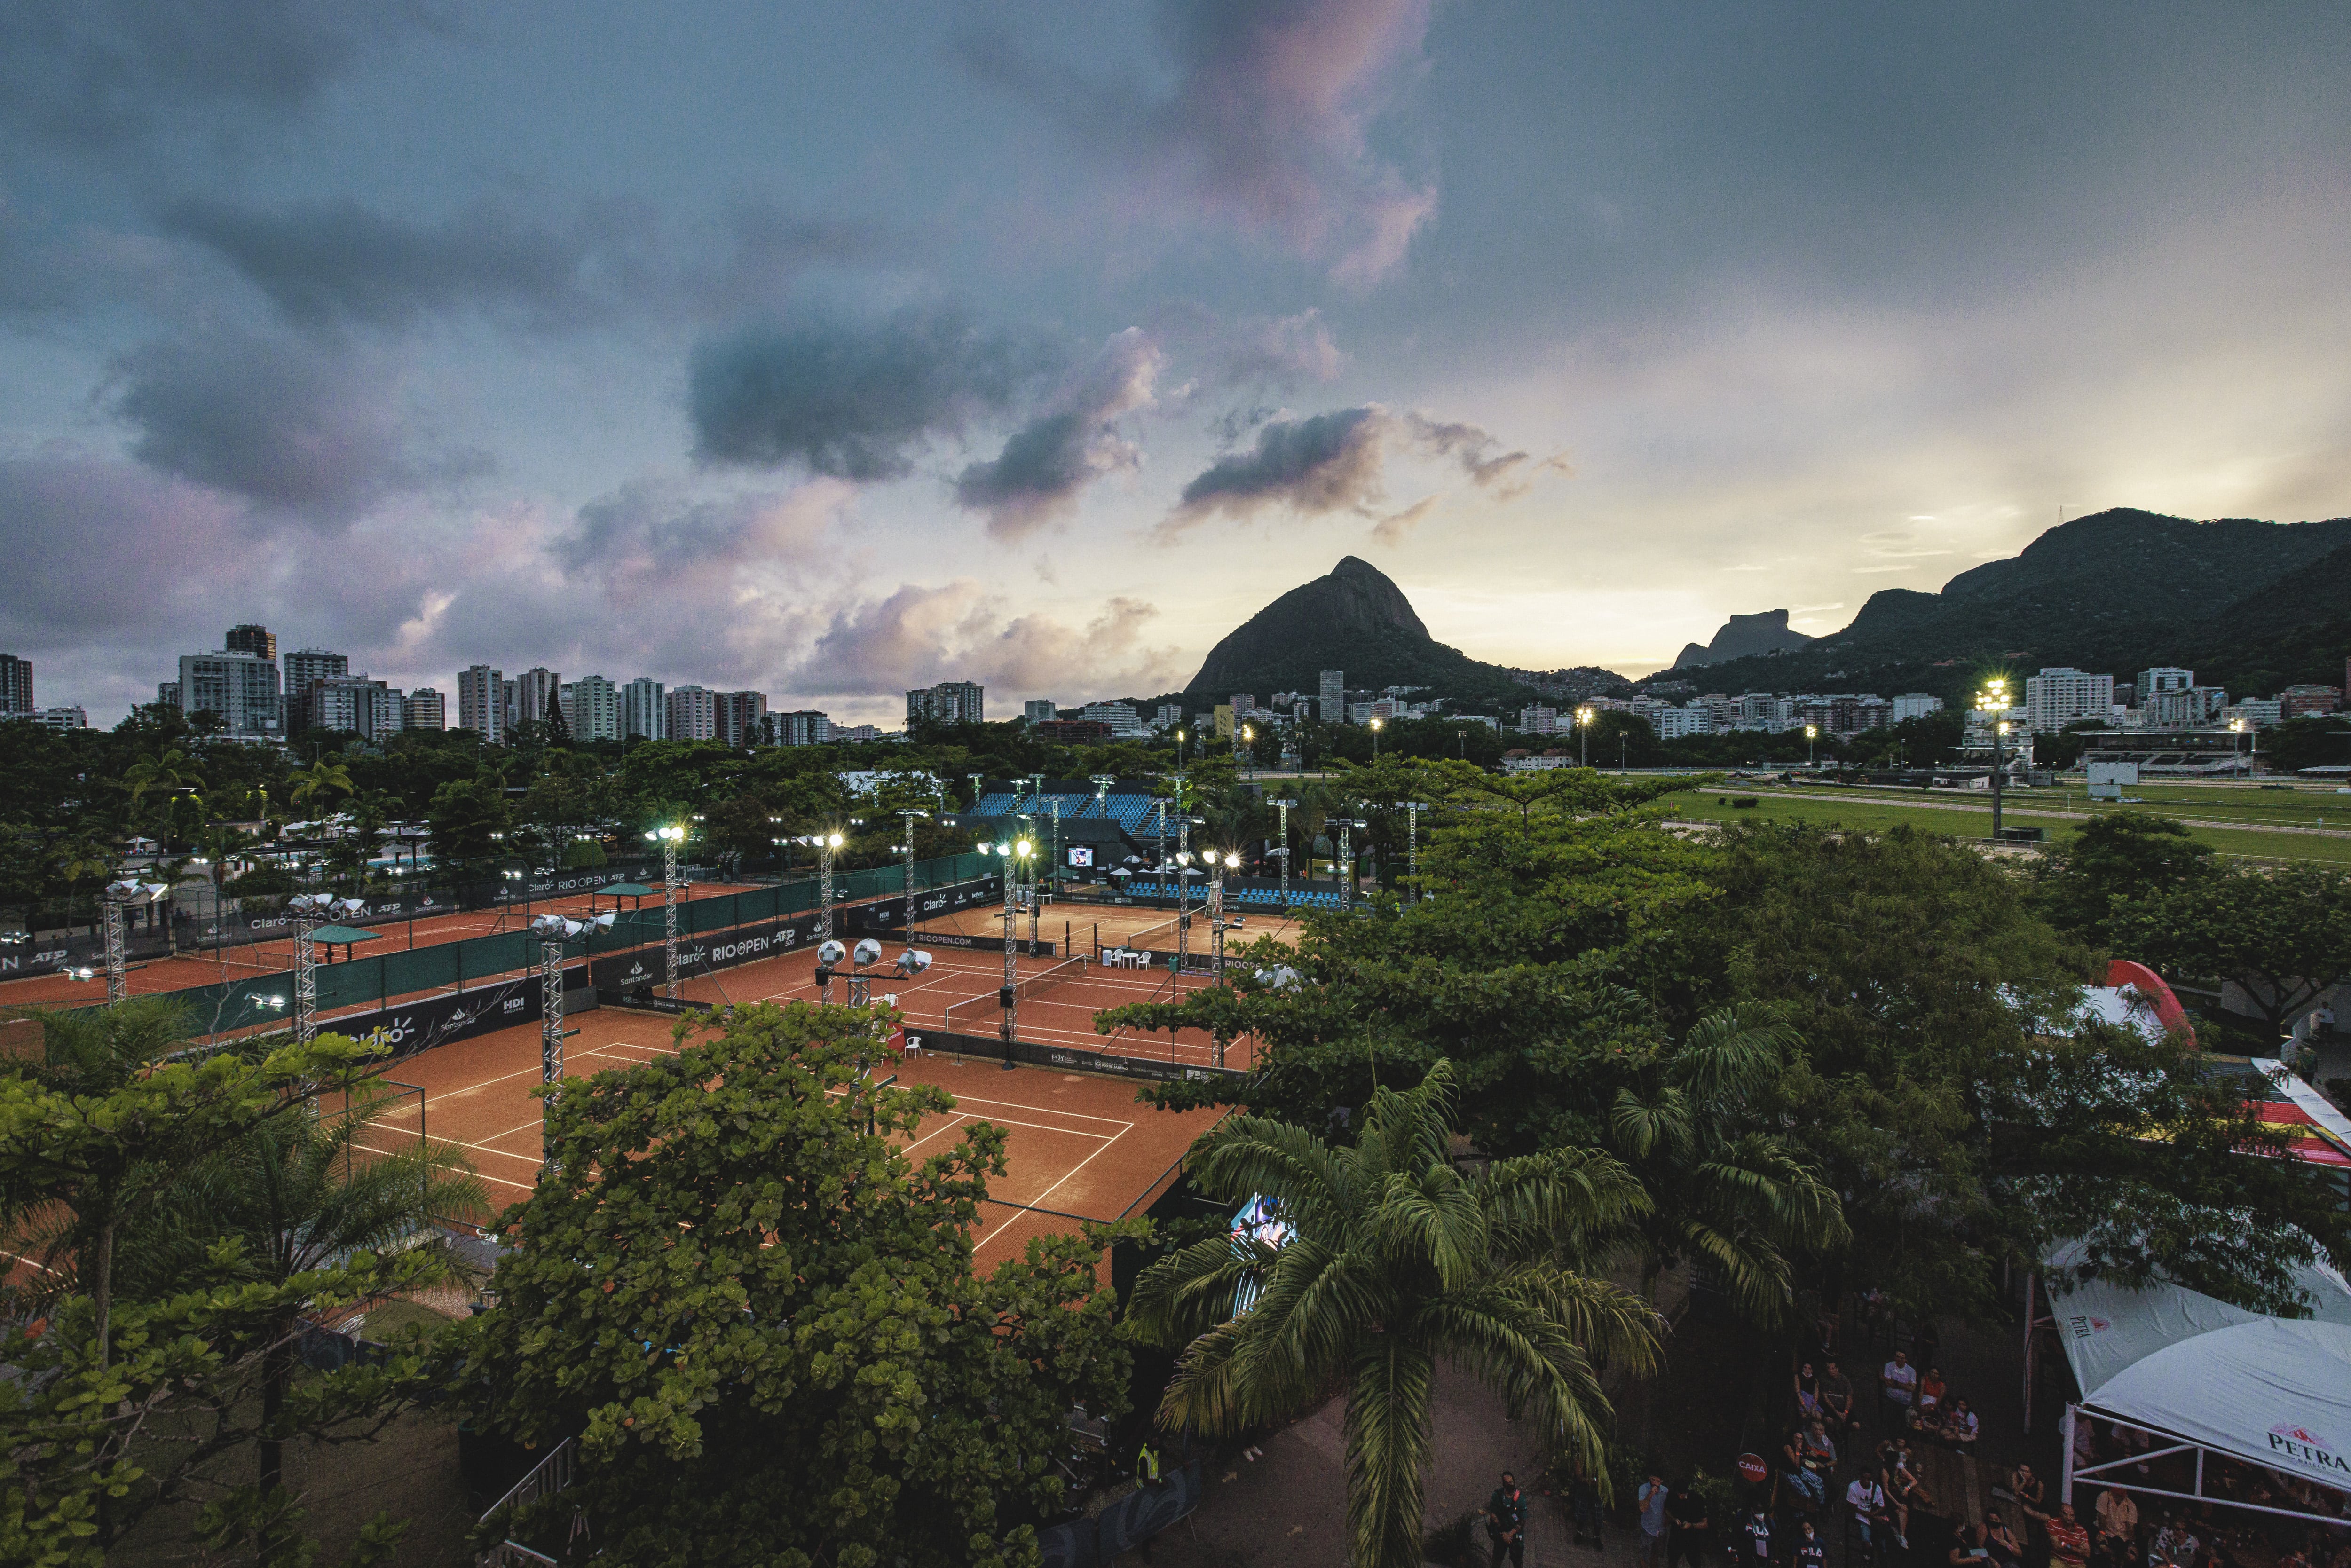 Rio Open: Paixão pelo tênis e pela conectividade